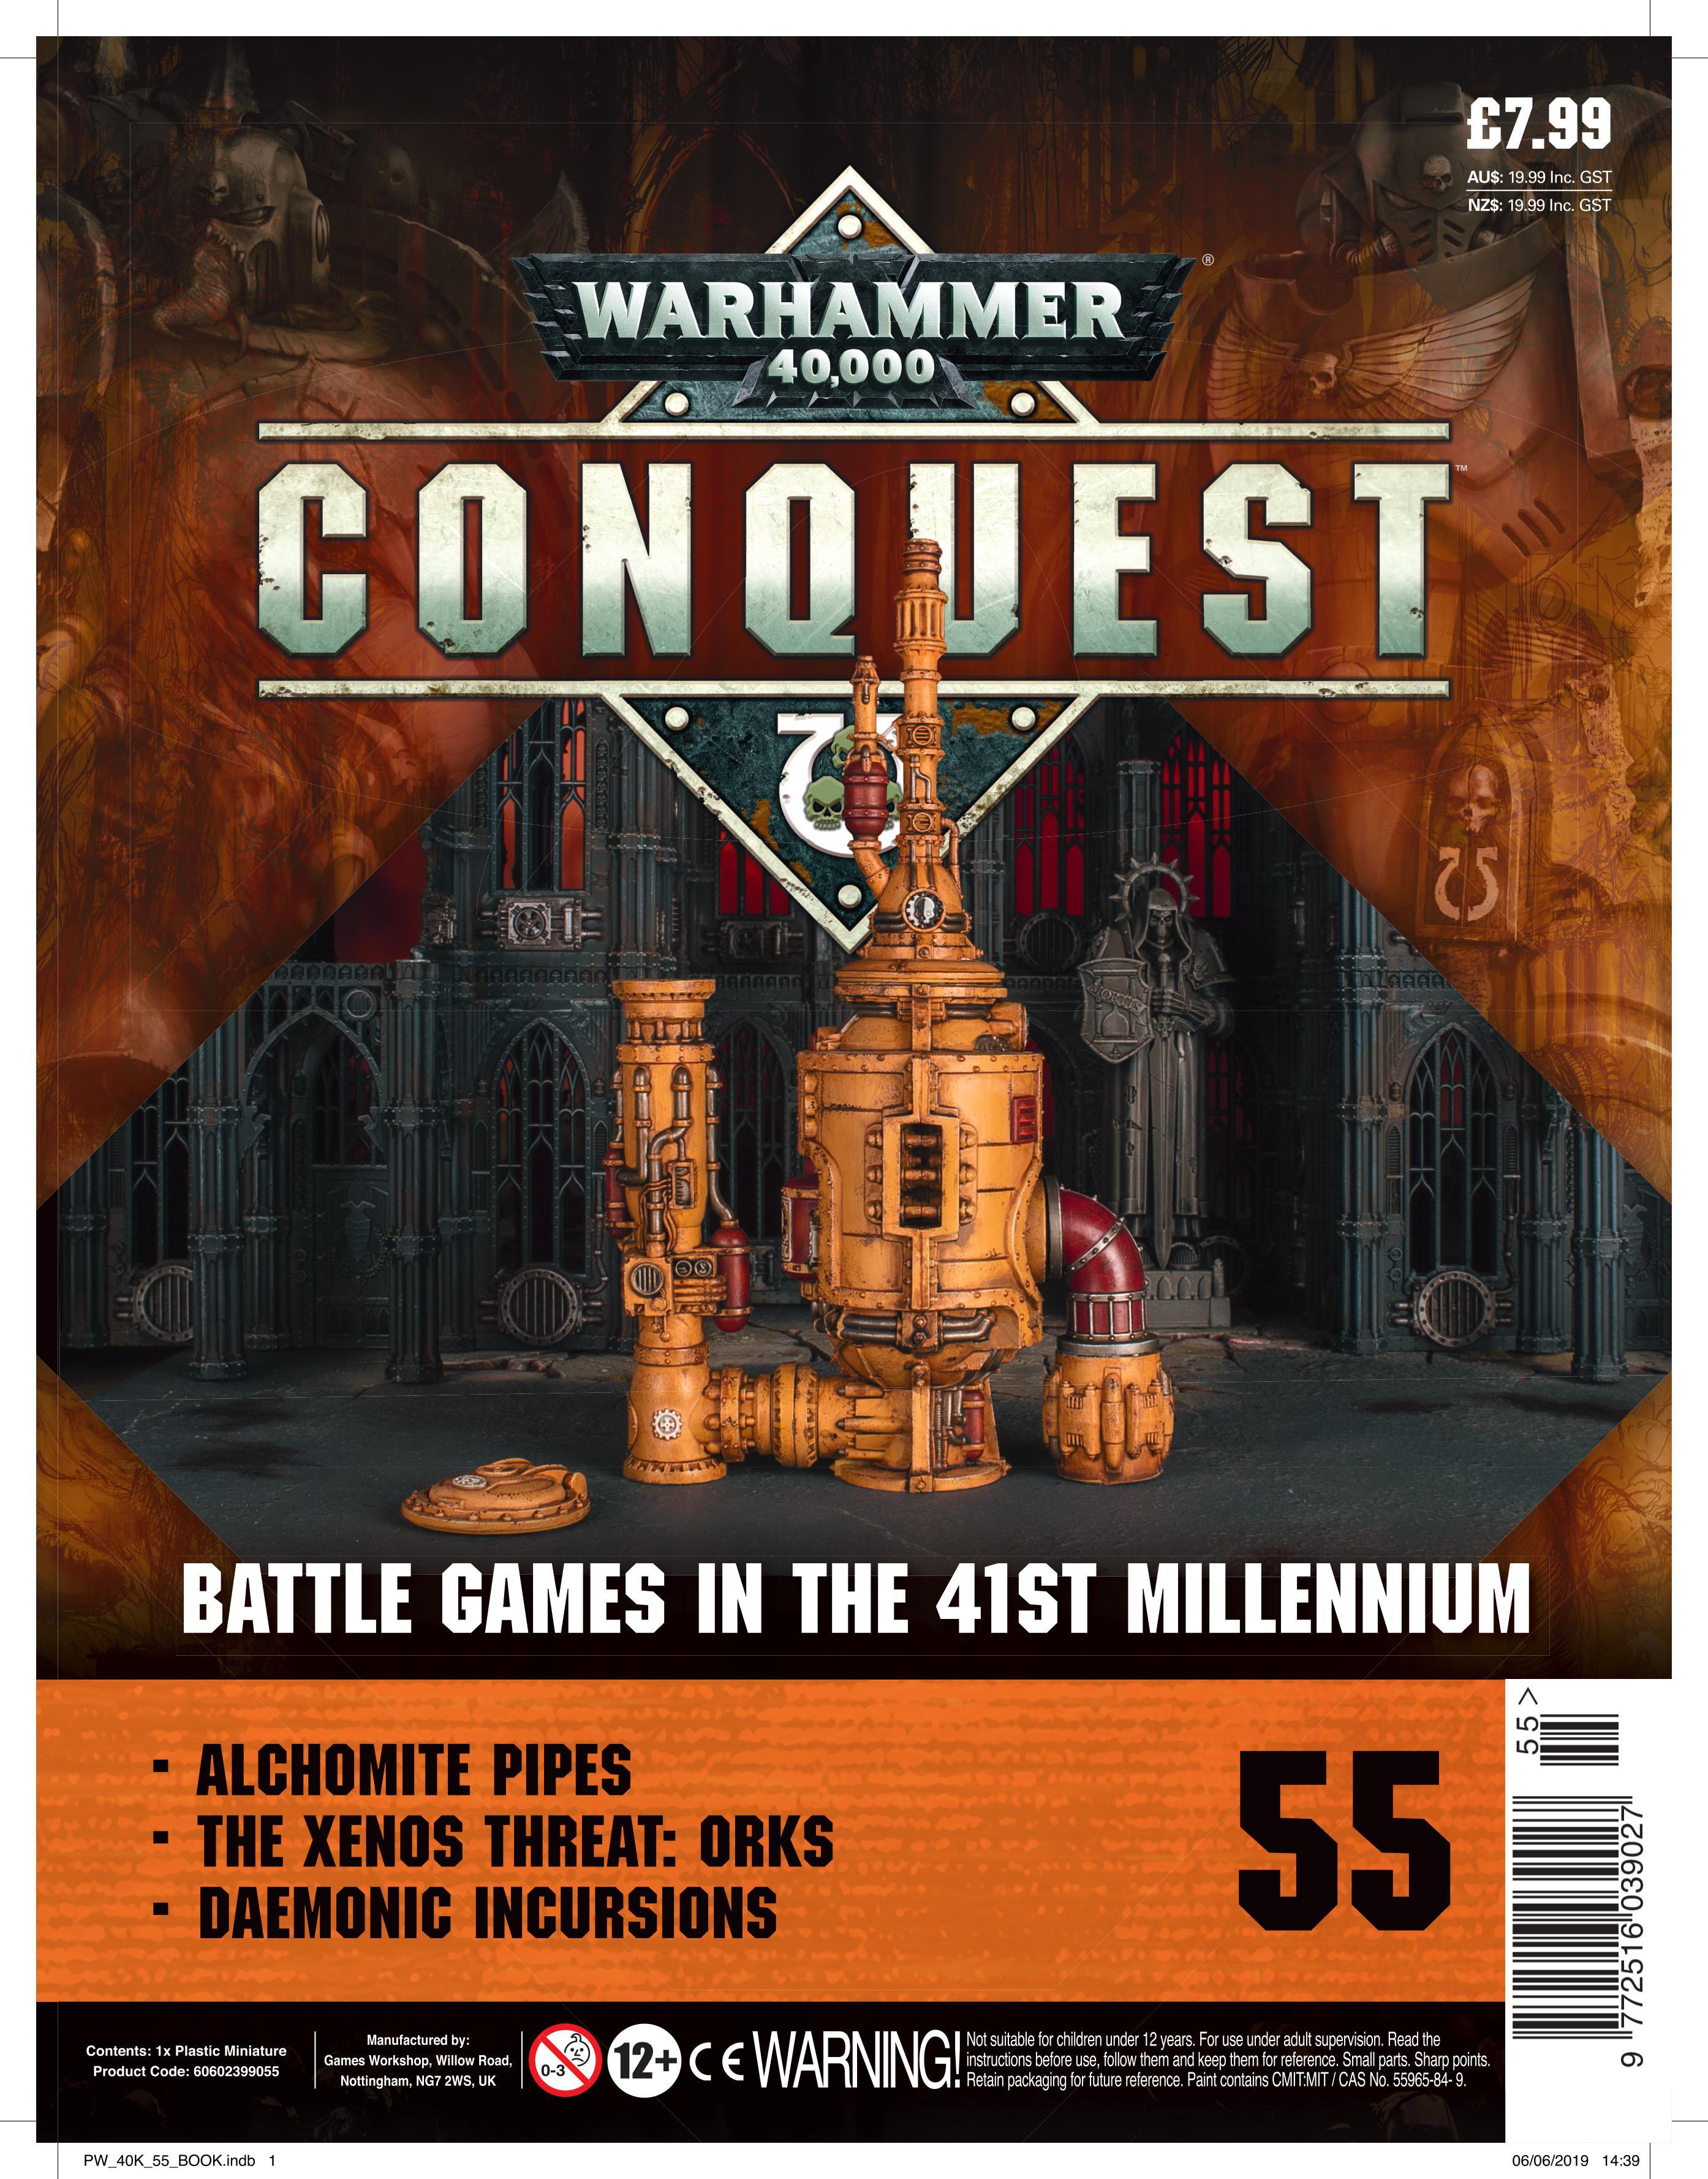 Warhammer Conquest #55 - Waterfront News